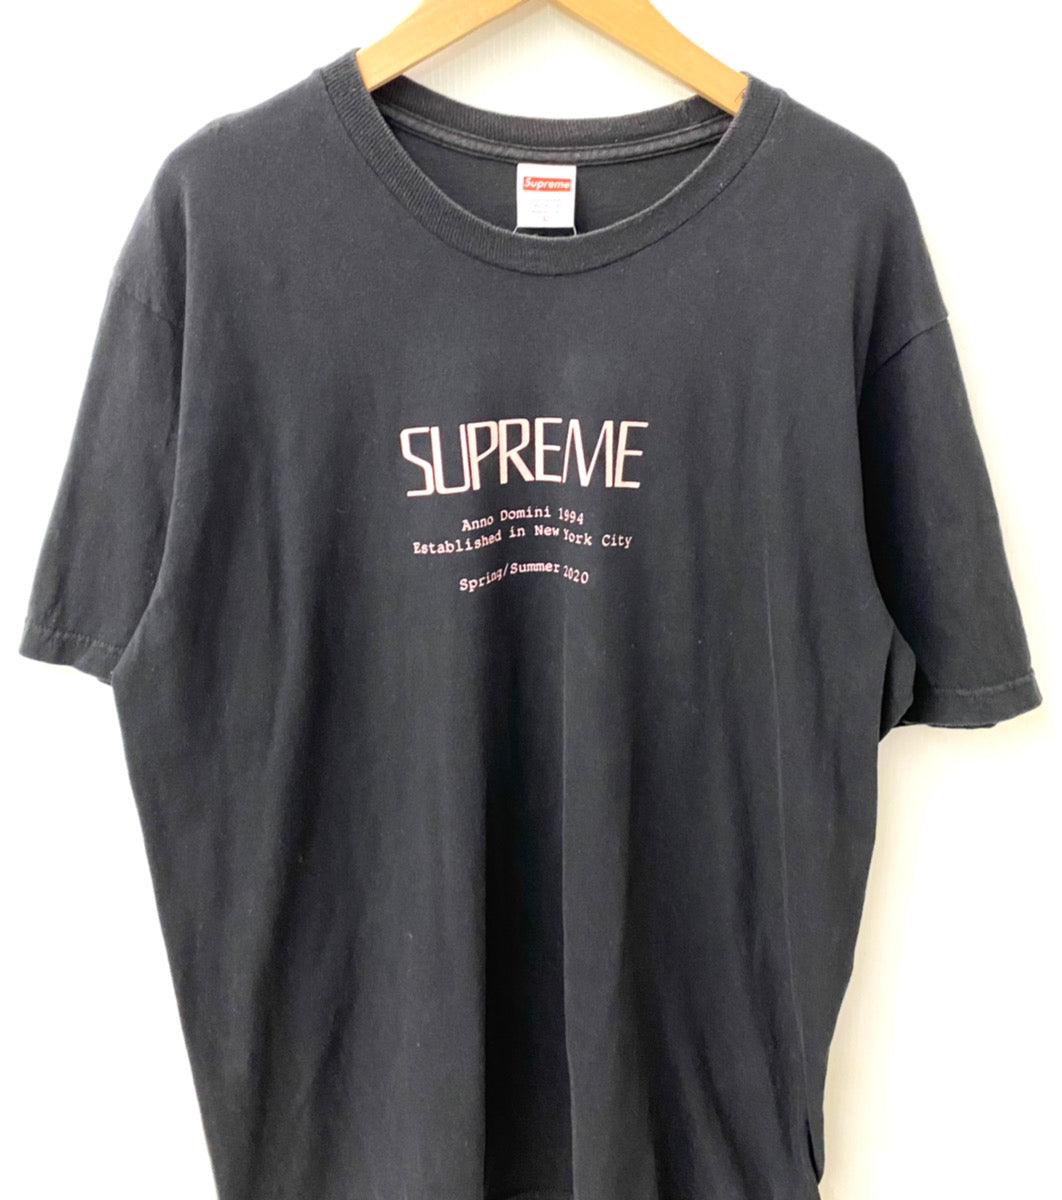 シュプリーム SUPREME Anno Domini Tee Tシャツ ロゴ ブラック Lサイズ 201MT-1813